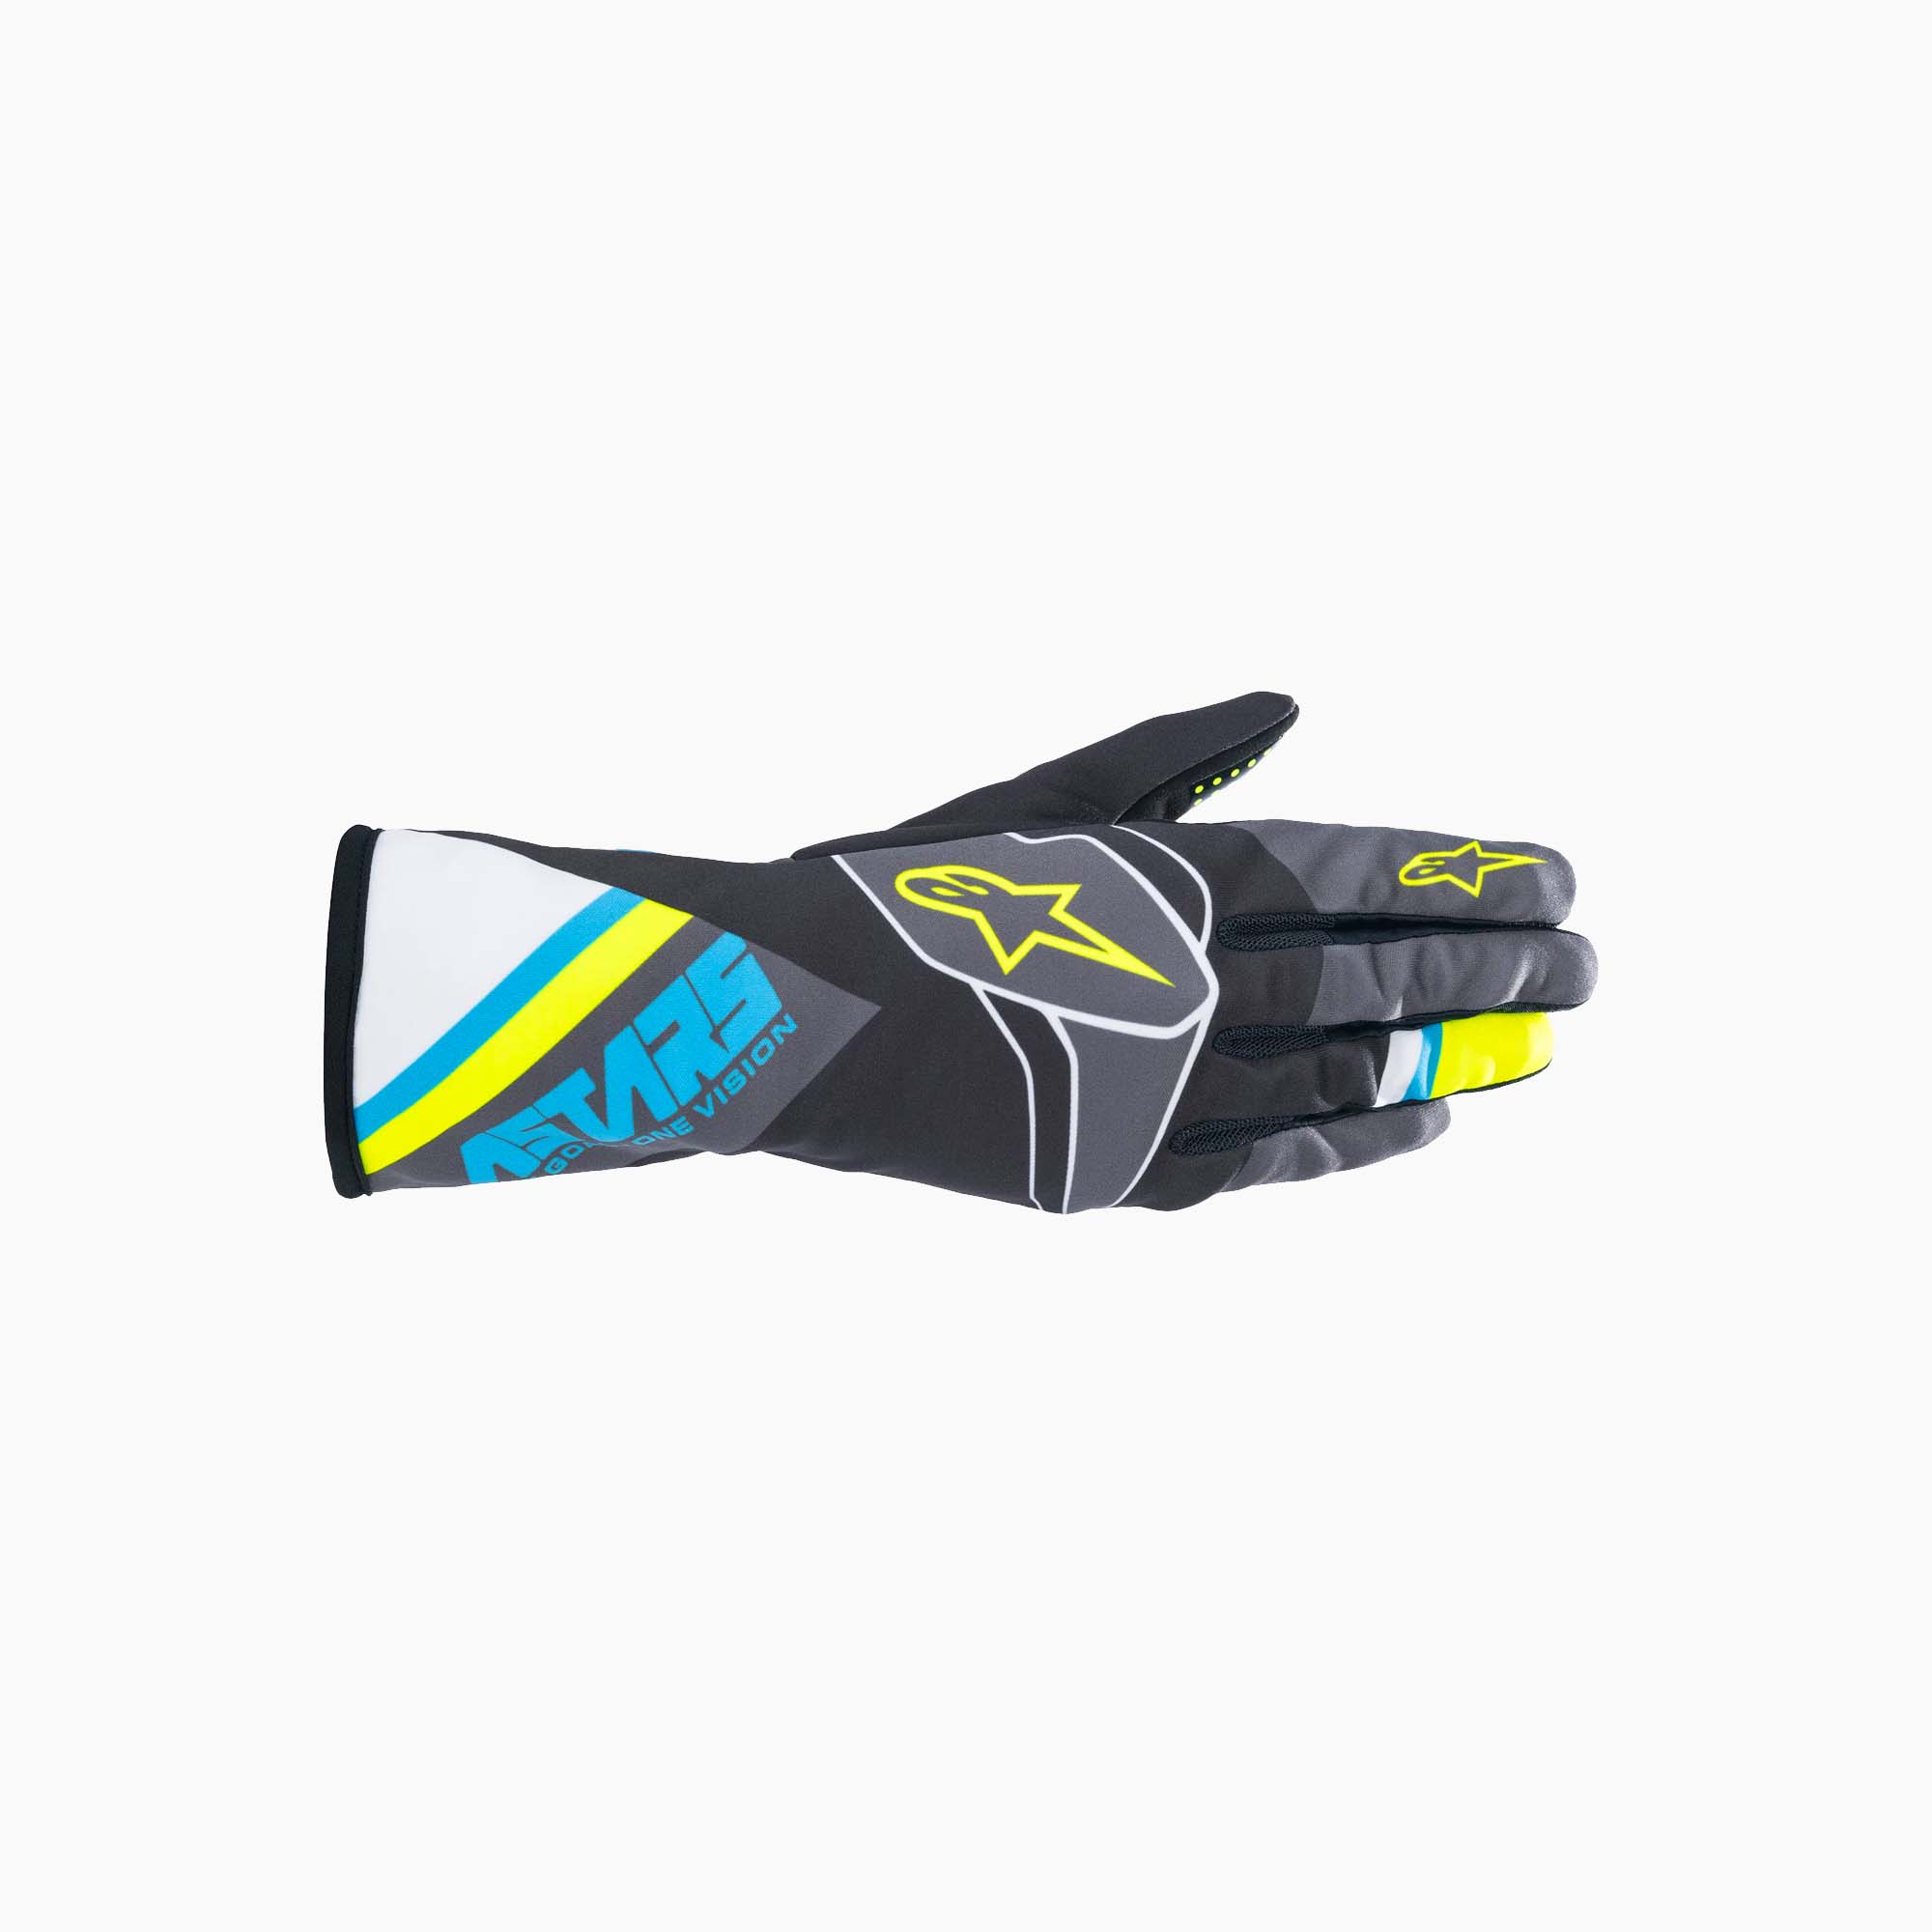 Alpinestars | Tech-1 K Race S V2 Blue Graphic Youth Karting Gloves-Karting Gloves-Alpinestars-gpx-store